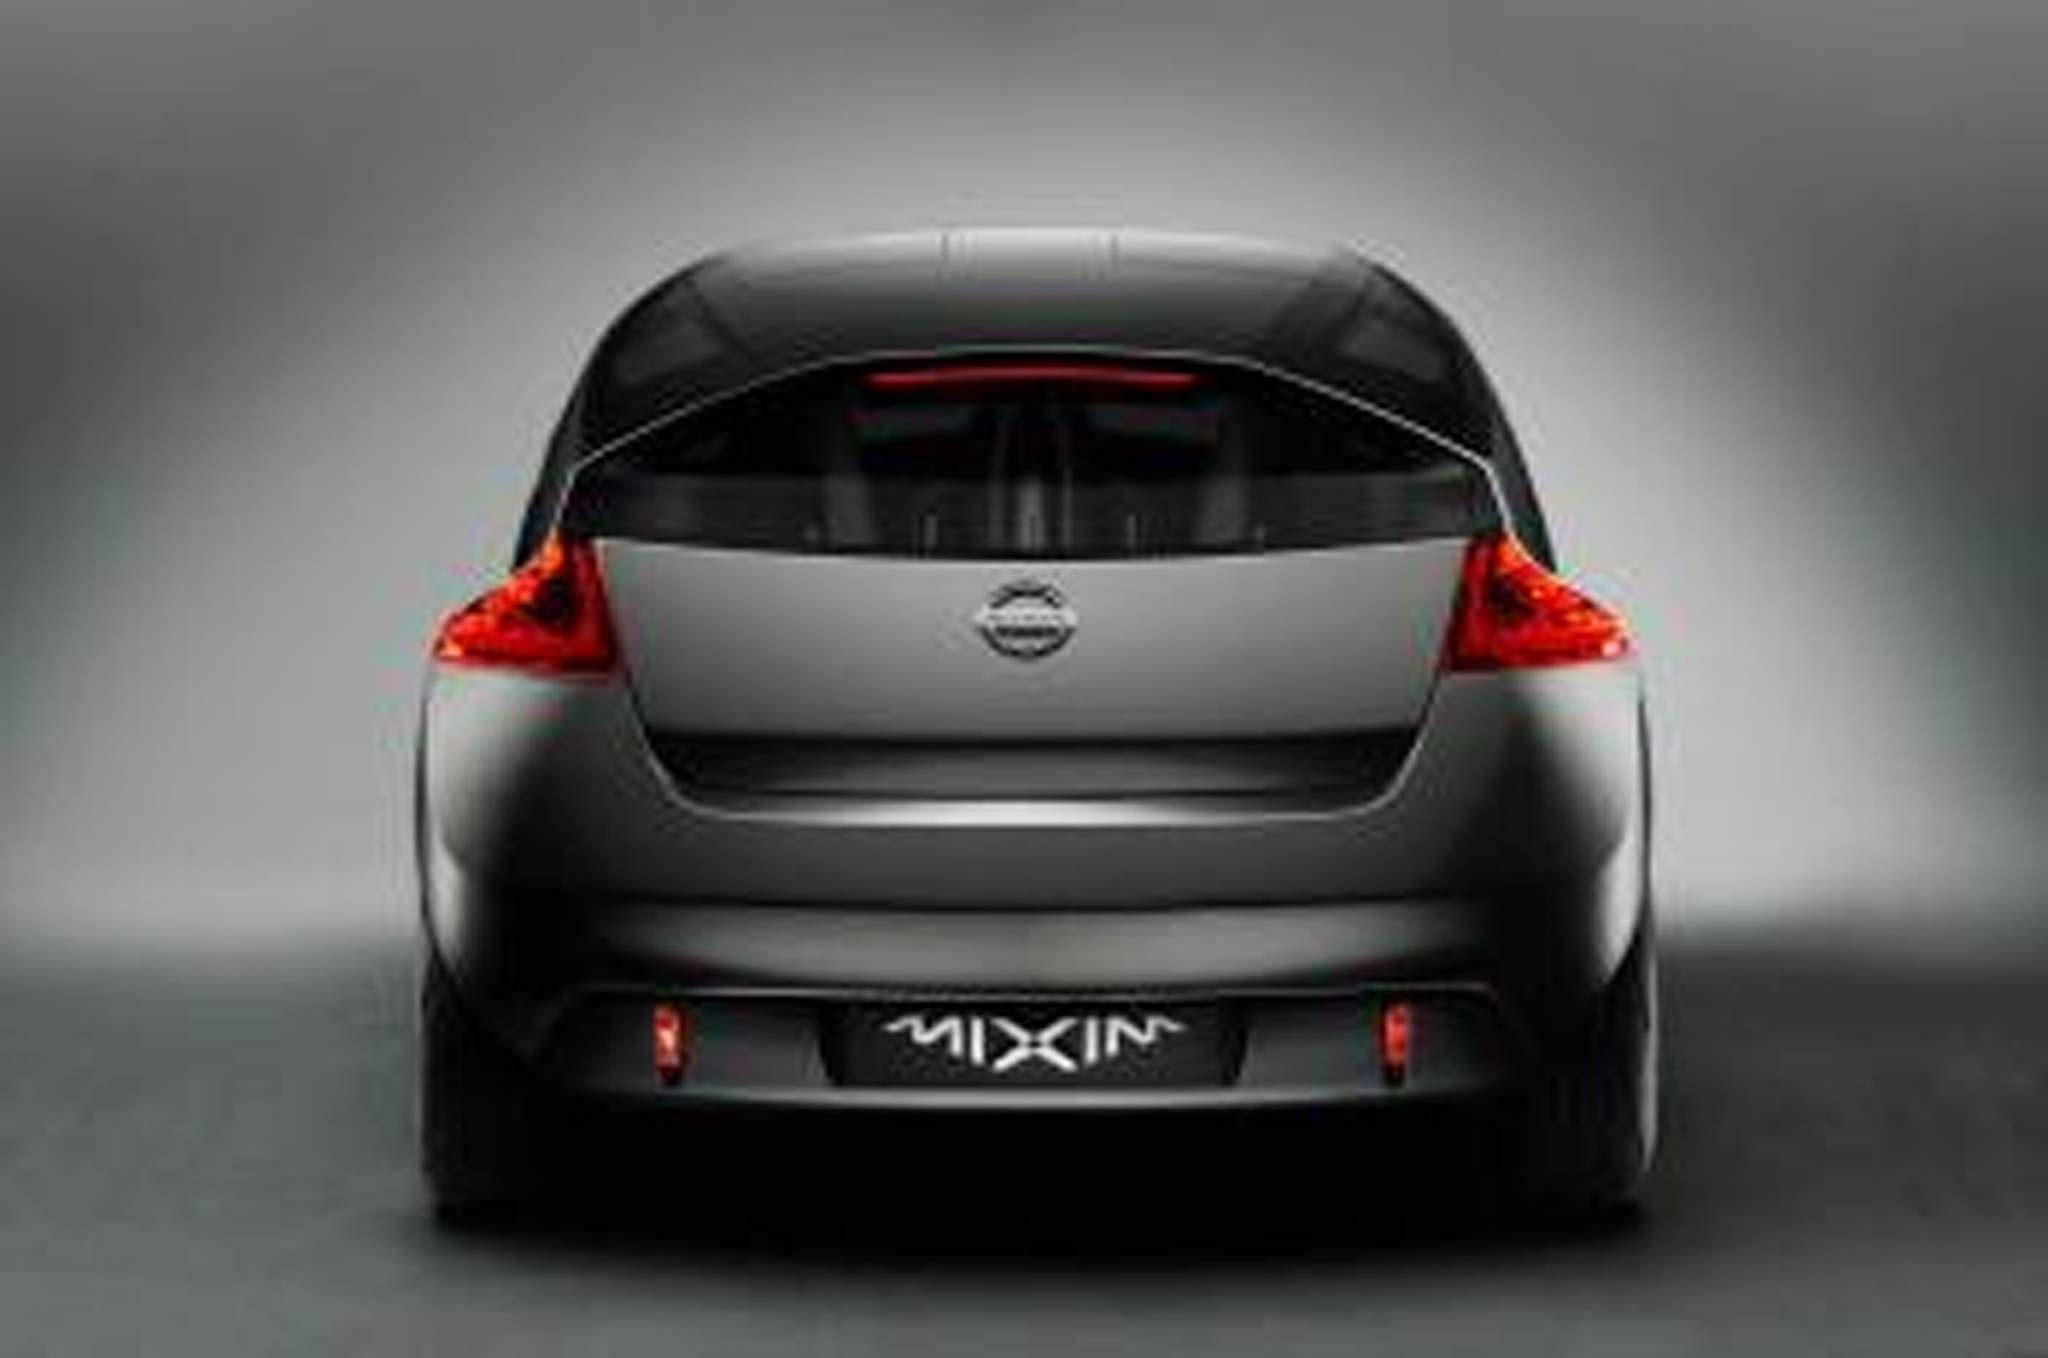 Nissan Mixim Backgrounds, Compatible - PC, Mobile, Gadgets| 2048x1358 px